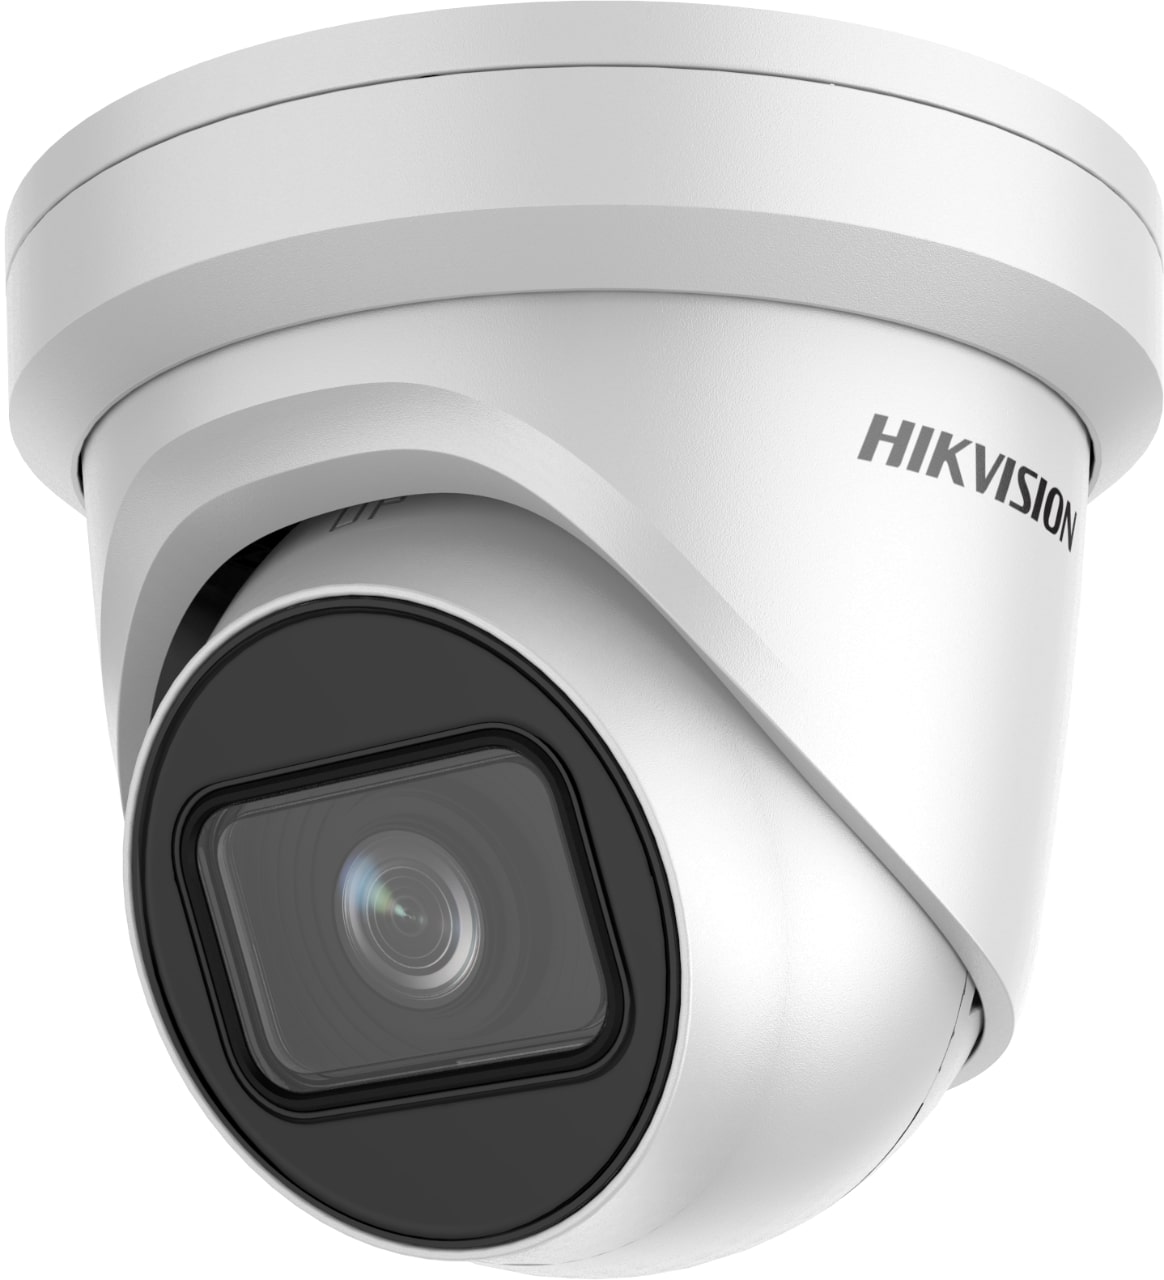 Hikvision IP Camera DS-2CD3345G0-I(B)